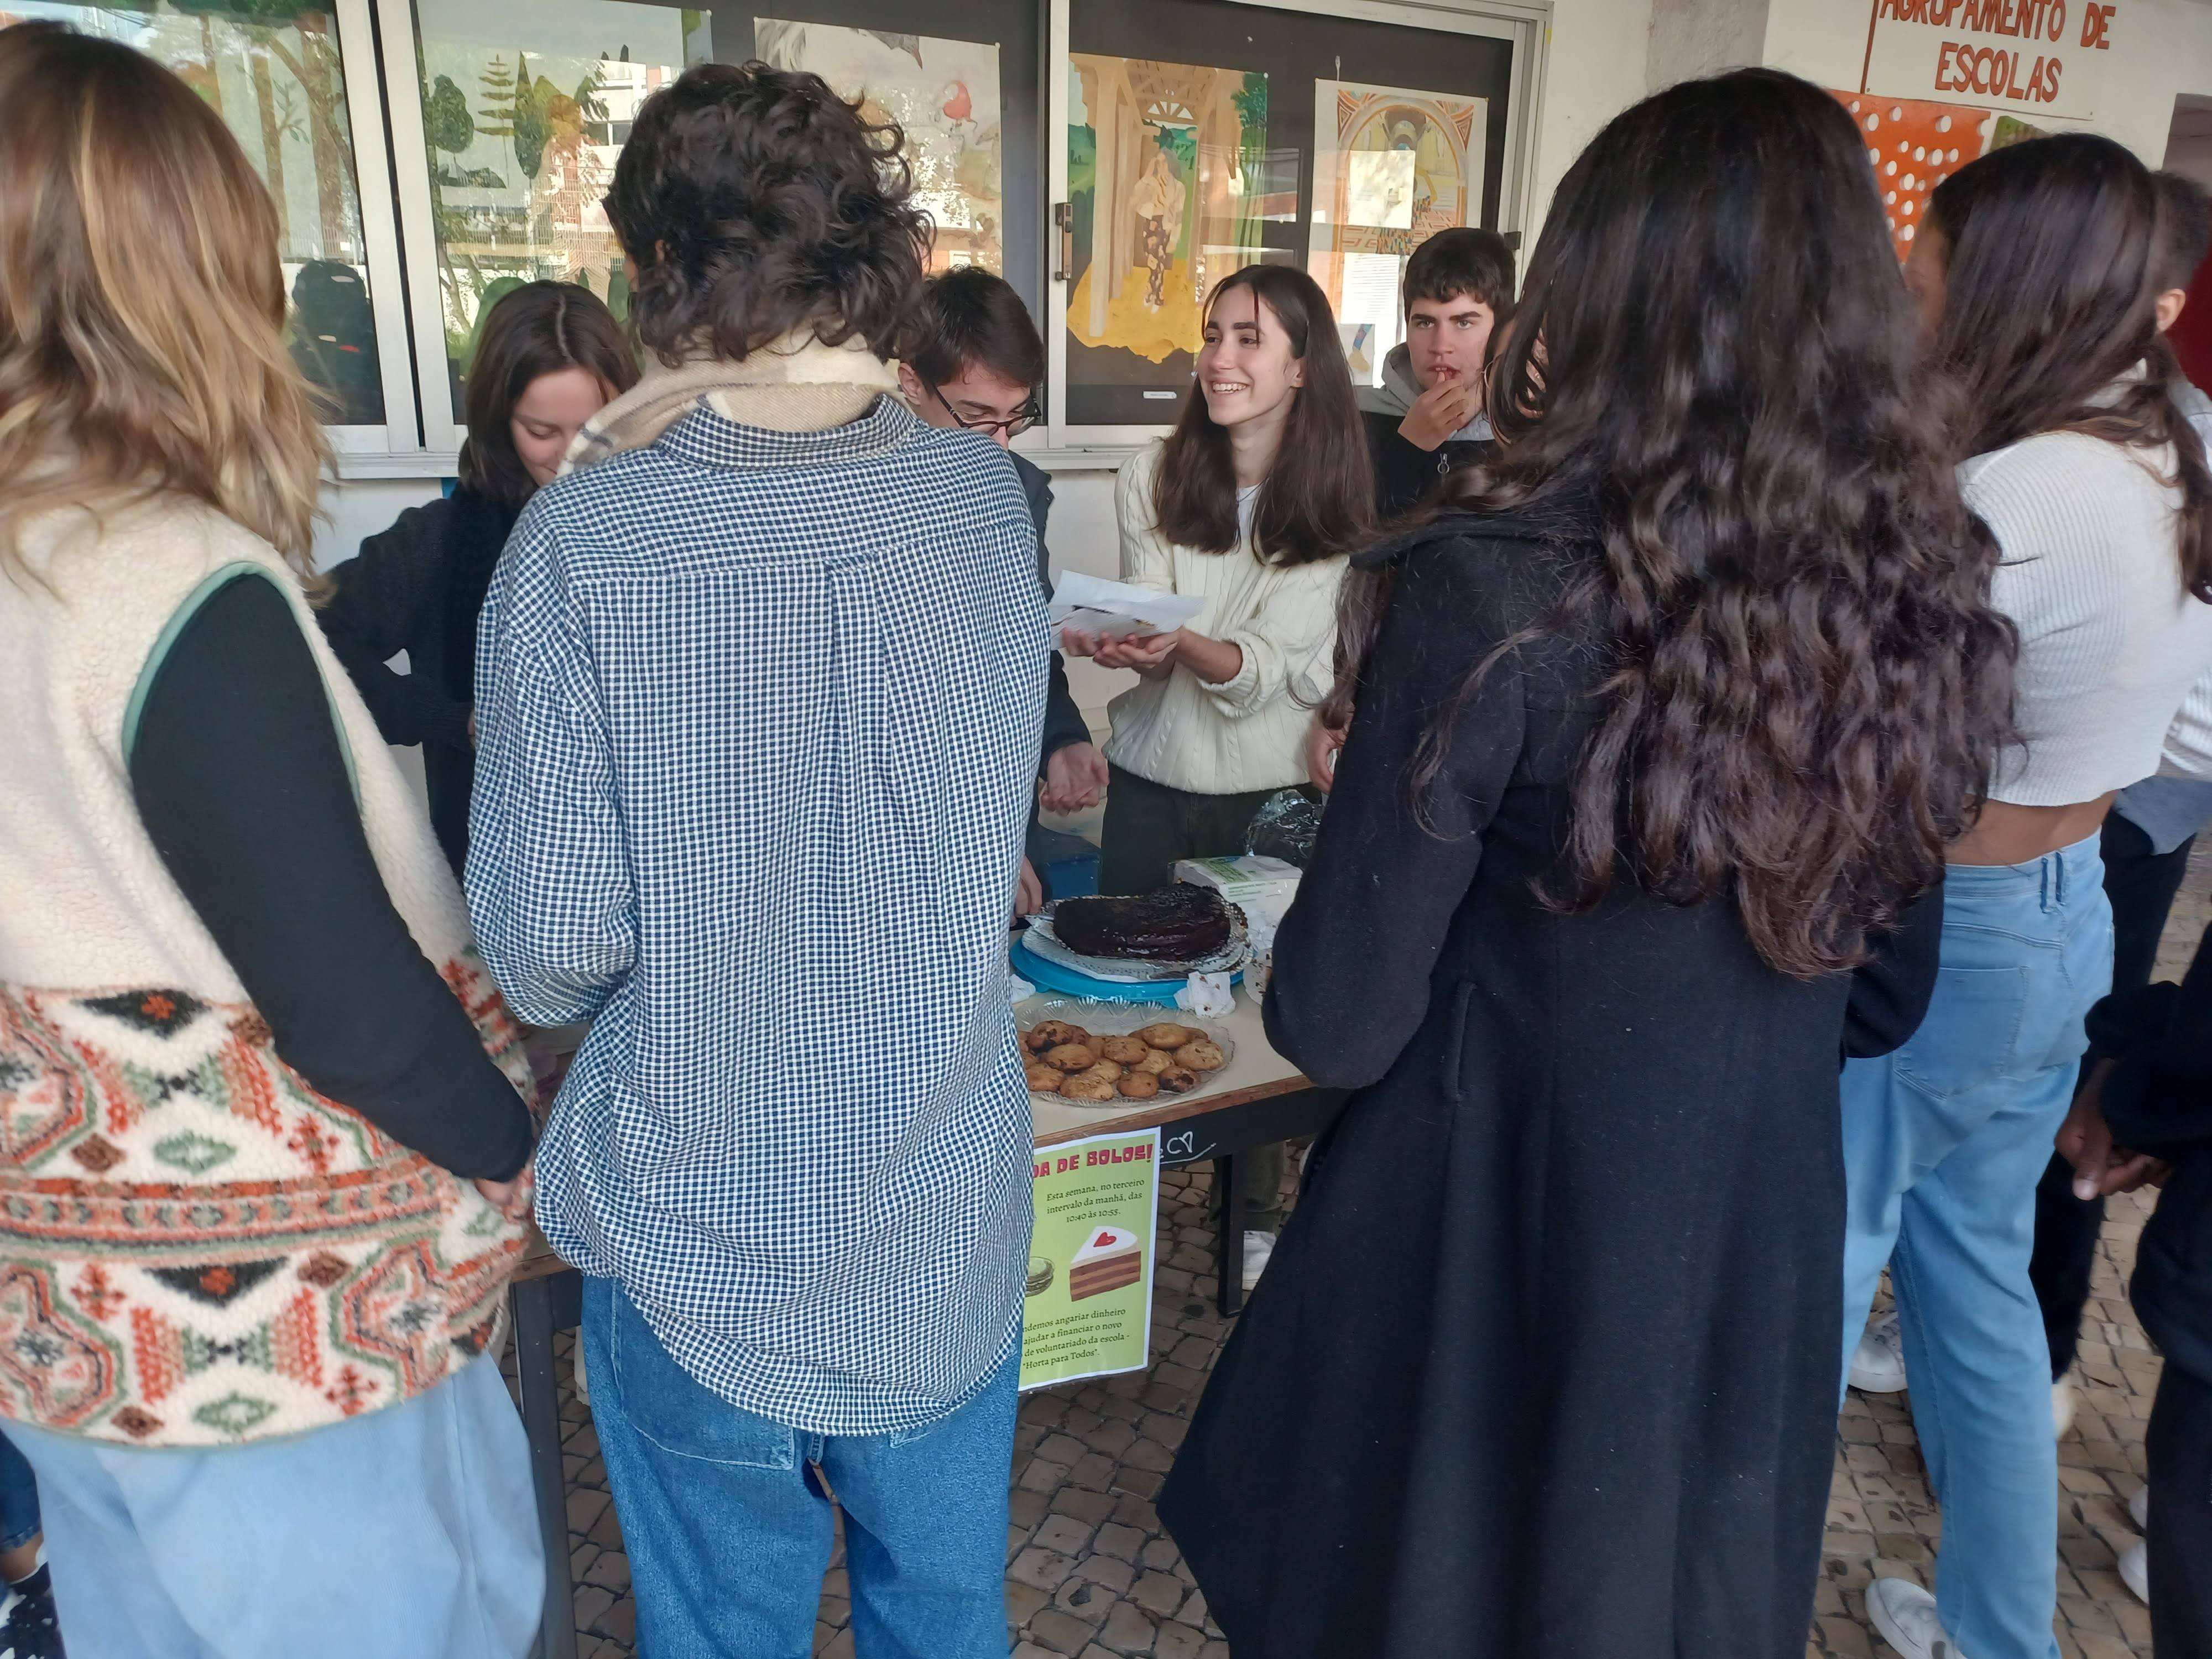 Participação dos alunos da escola na campanha de venda de bolos a favor do projeto "Horta Para Todos!"